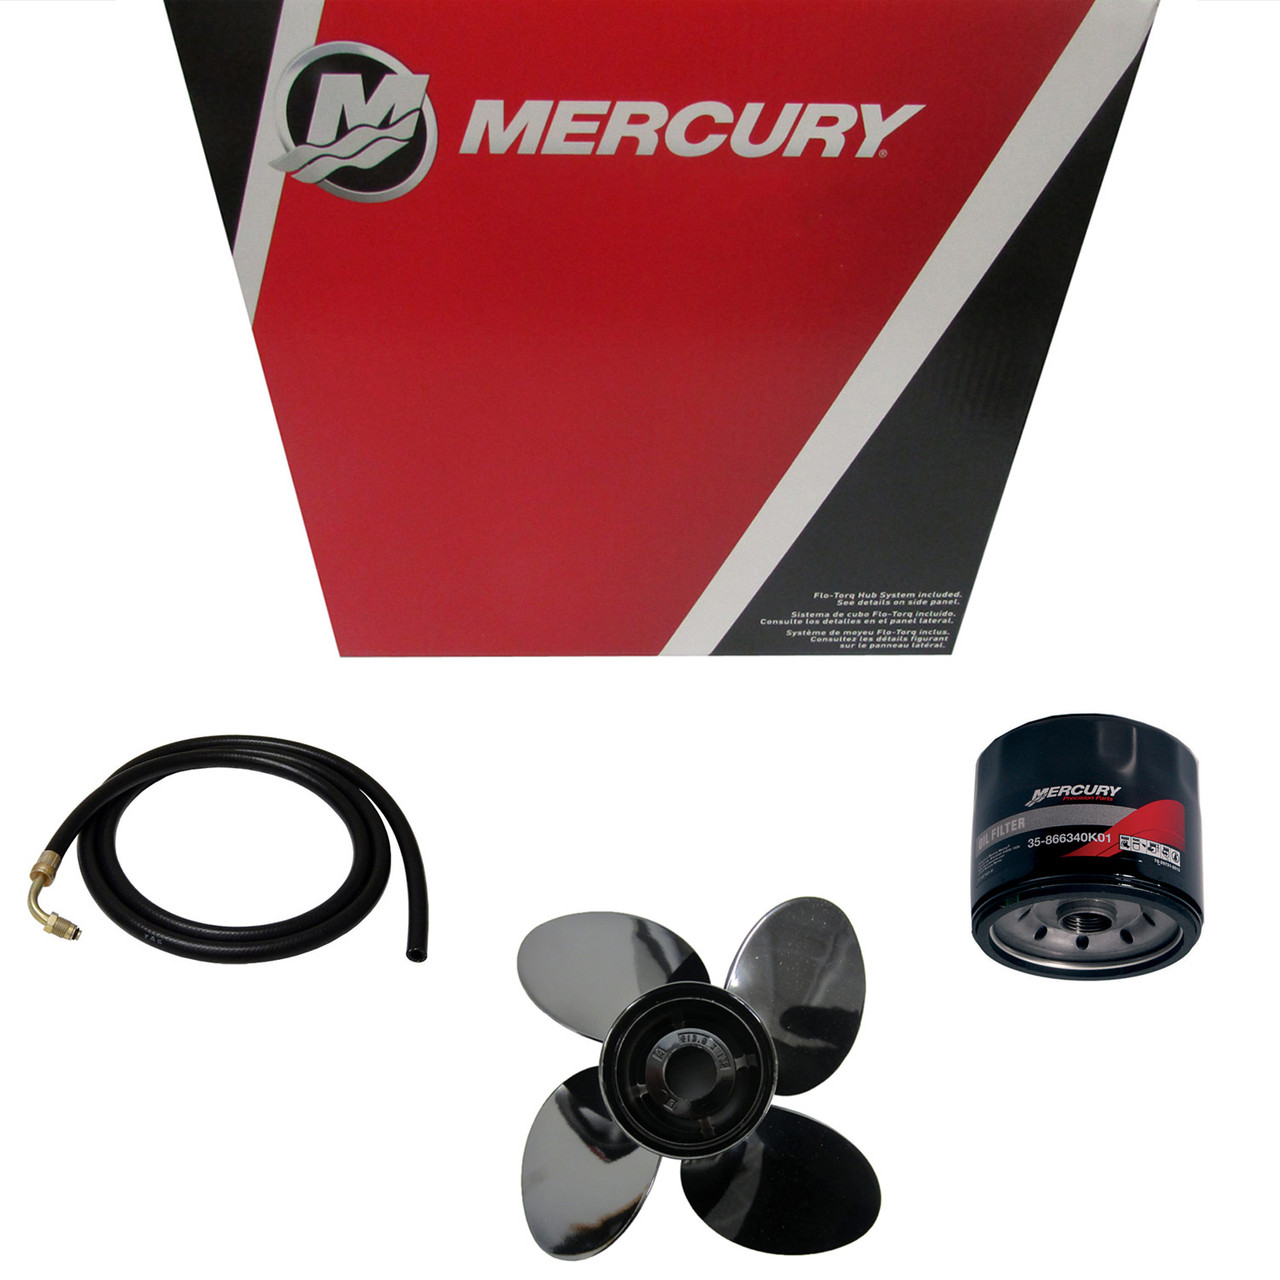 Mercury Marine / Mercruiser New OEM Anode Kit(Alum), 97-821629T1